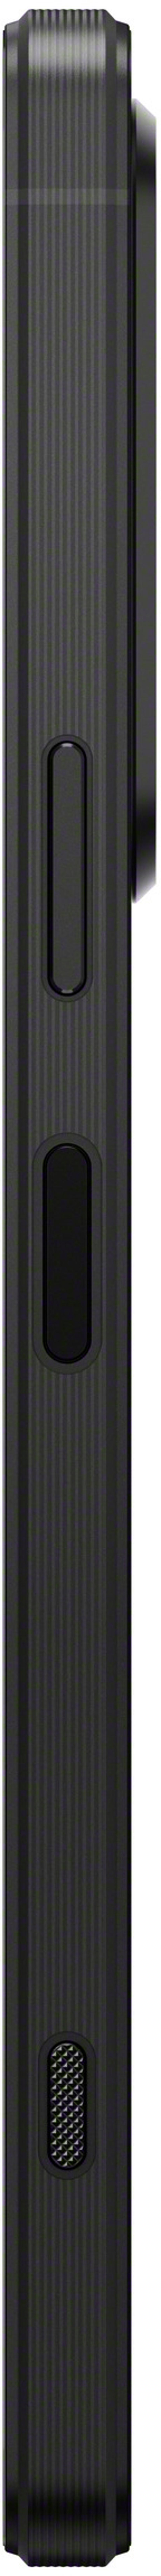 Sony XPERIA 1 V 256GB Kaksois-SIM Musta